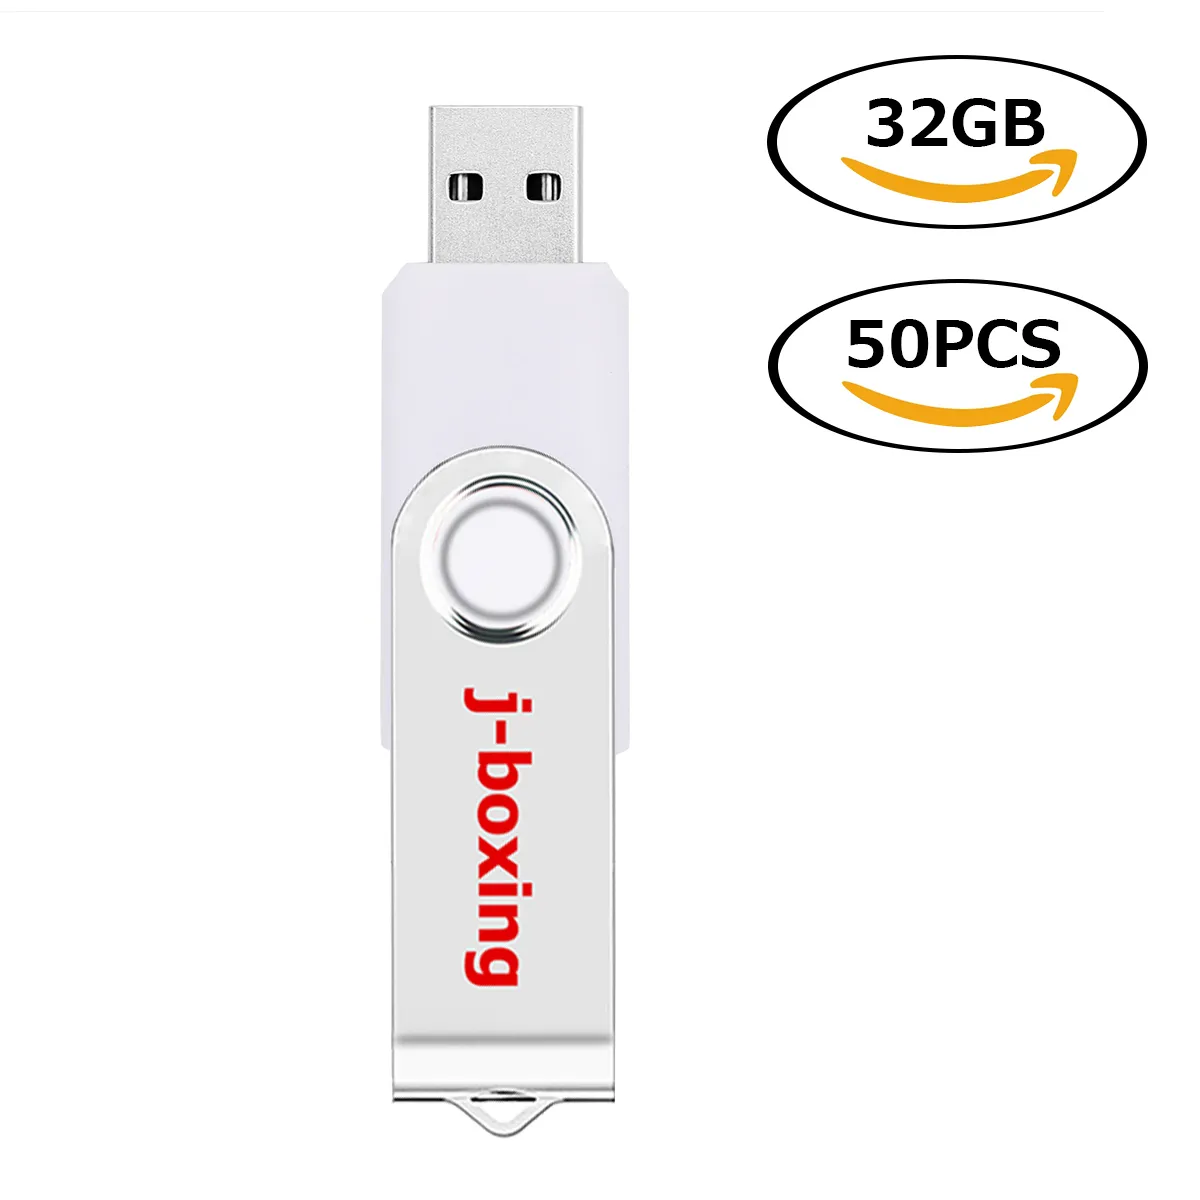 White Rotating 32GB USB 2.0 Flash Drive Bulk 50pcs Swivel Metal Flash Memory Stick 32gb Thumb Pen Drives Storage for Computer Laptop Tablet